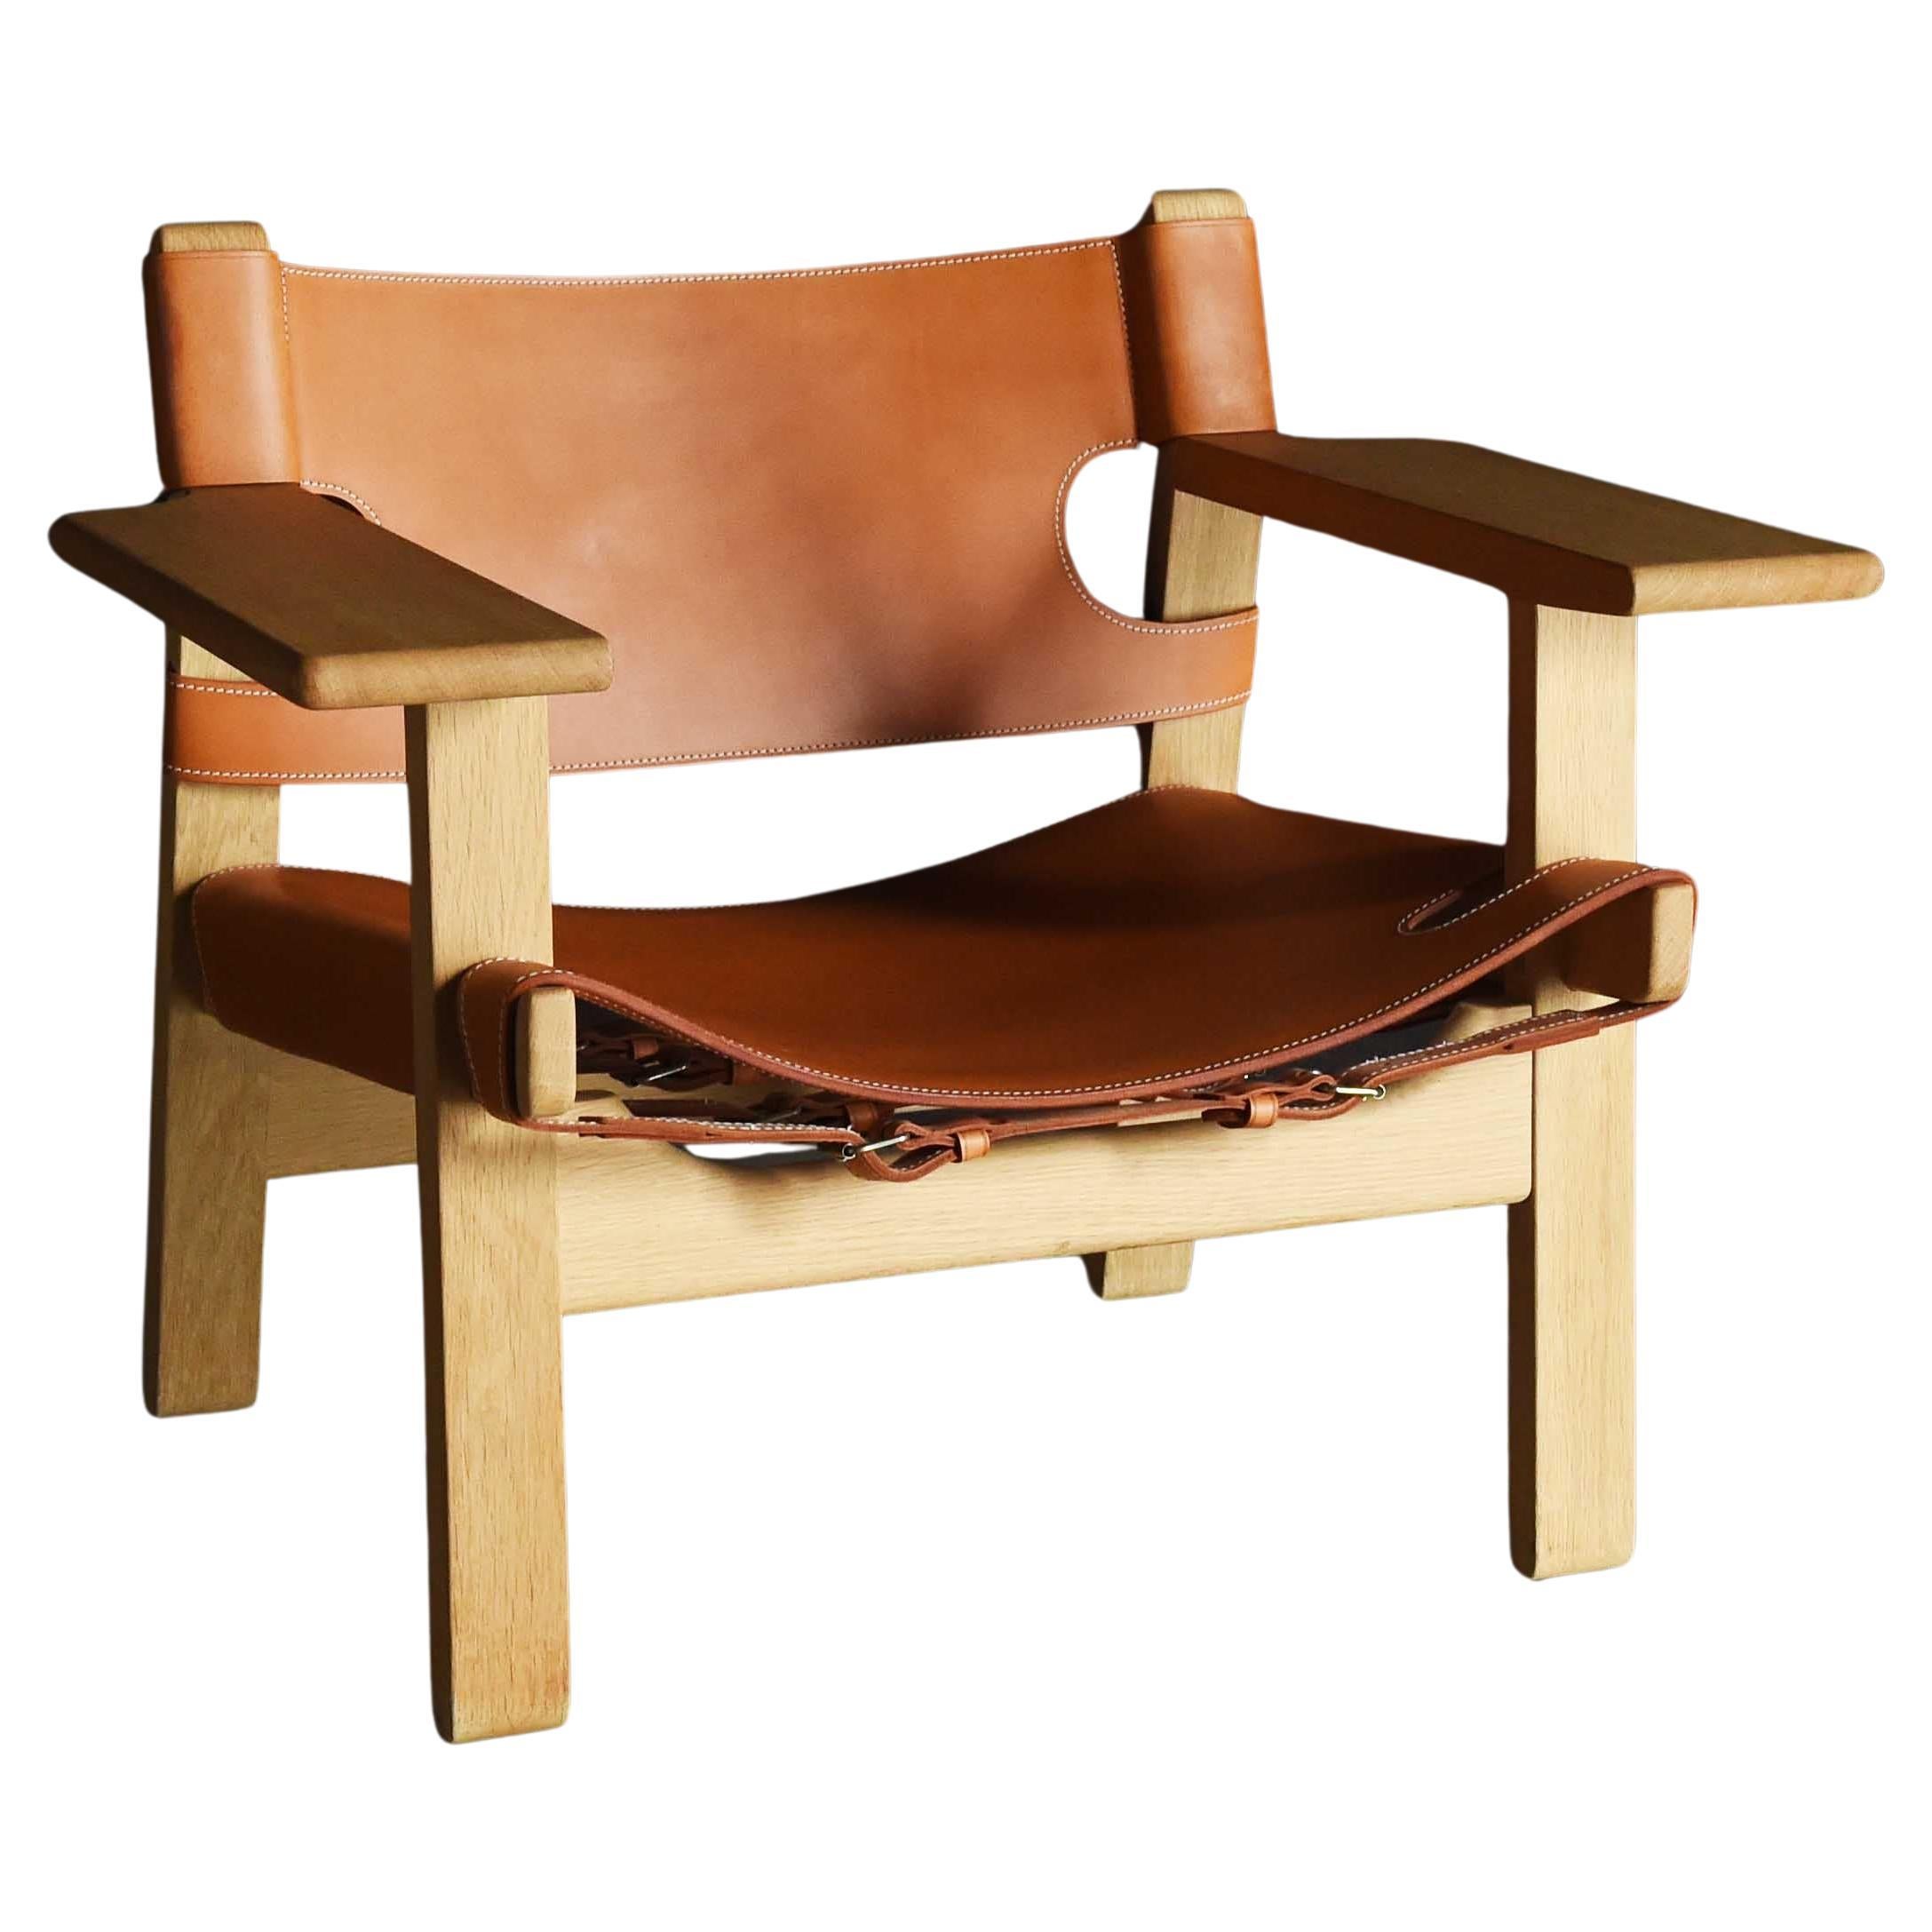 Borge Mogensen "Spanish chair" model2226